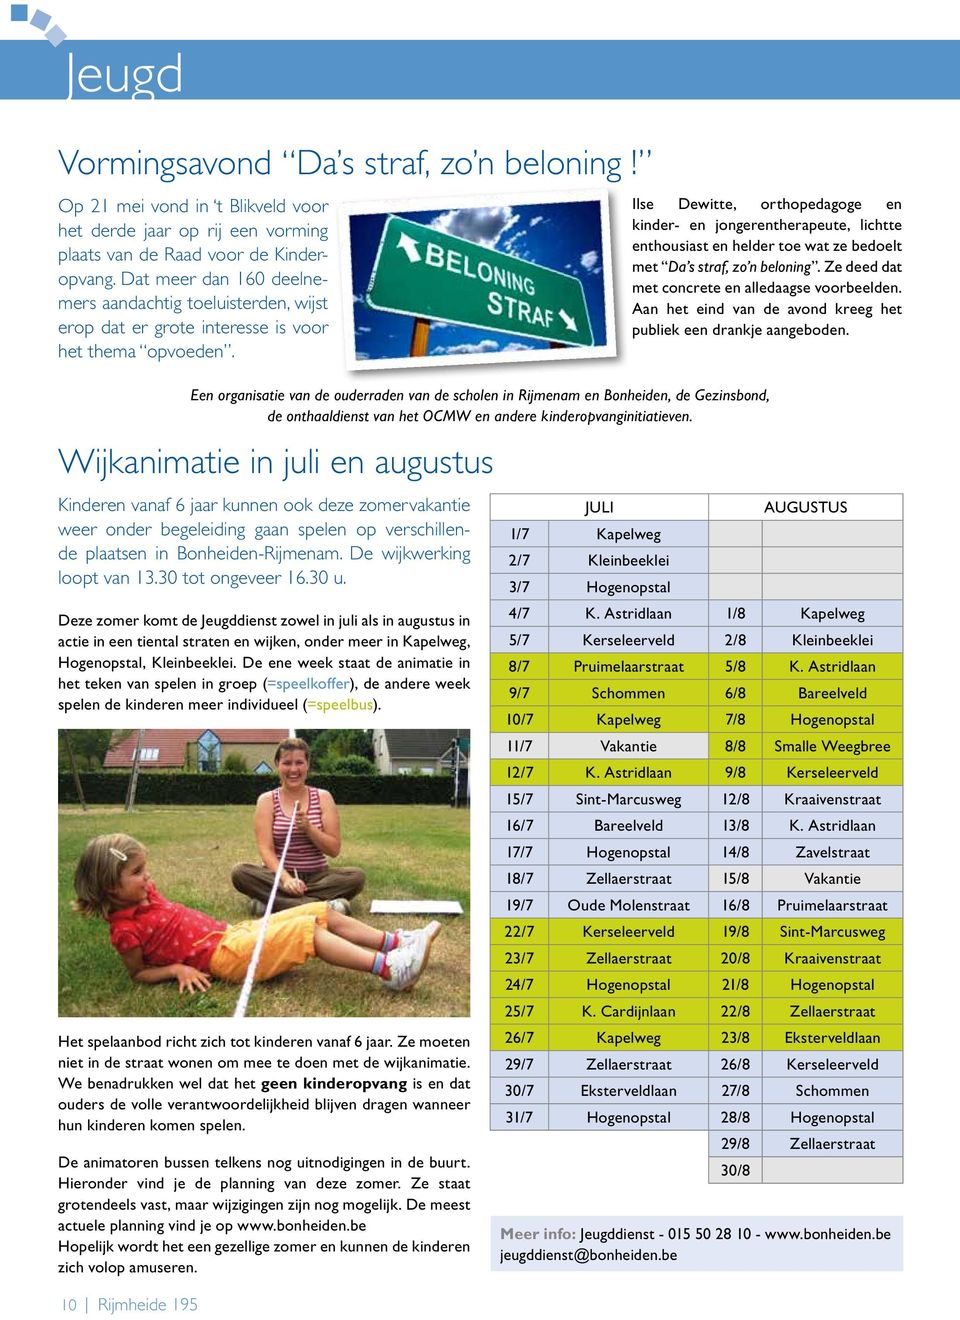 Wijkanimatie in juli en augustus Kinderen vanaf 6 jaar kunnen ook deze zomervakantie weer onder begeleiding gaan spelen op verschillende plaatsen in Bonheiden-Rijmenam. De wijkwerking loopt van 13.